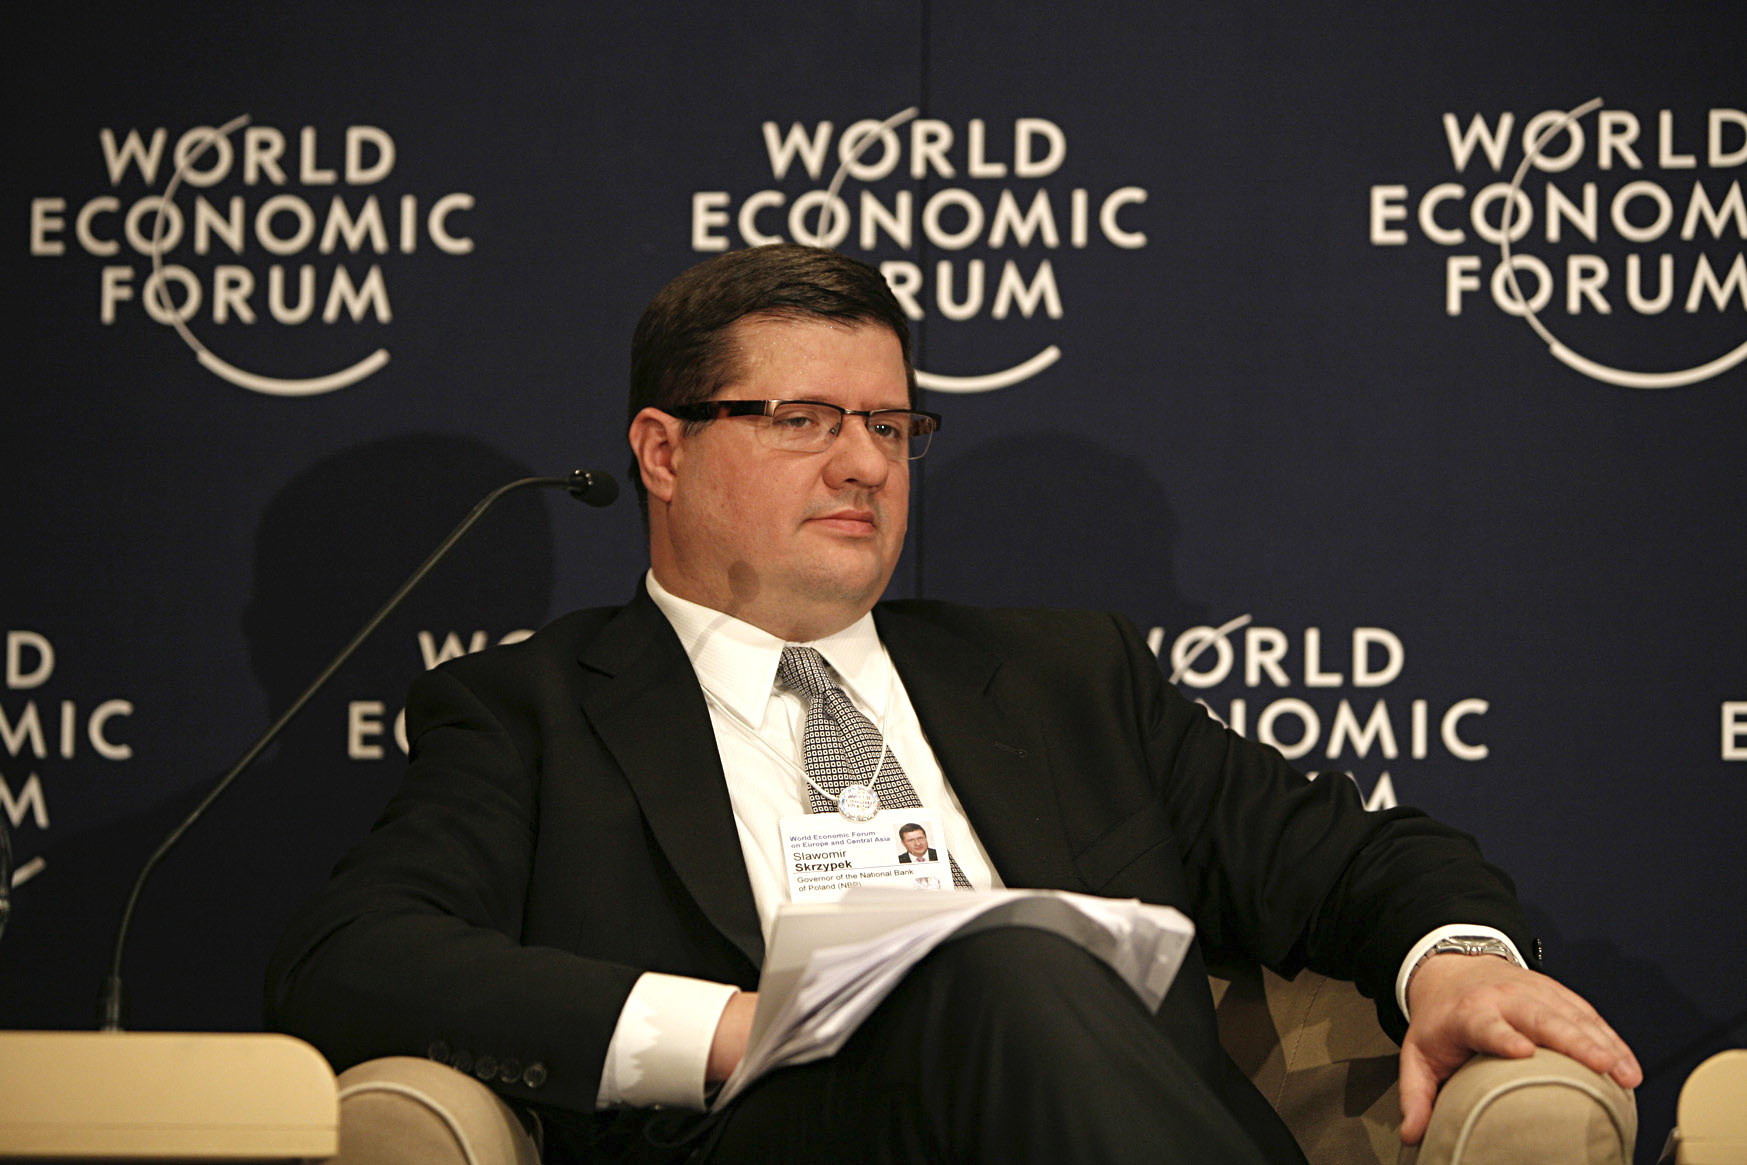 Slawomir_Skrzypek_-_World_Economic_Forum_Turkey_2008